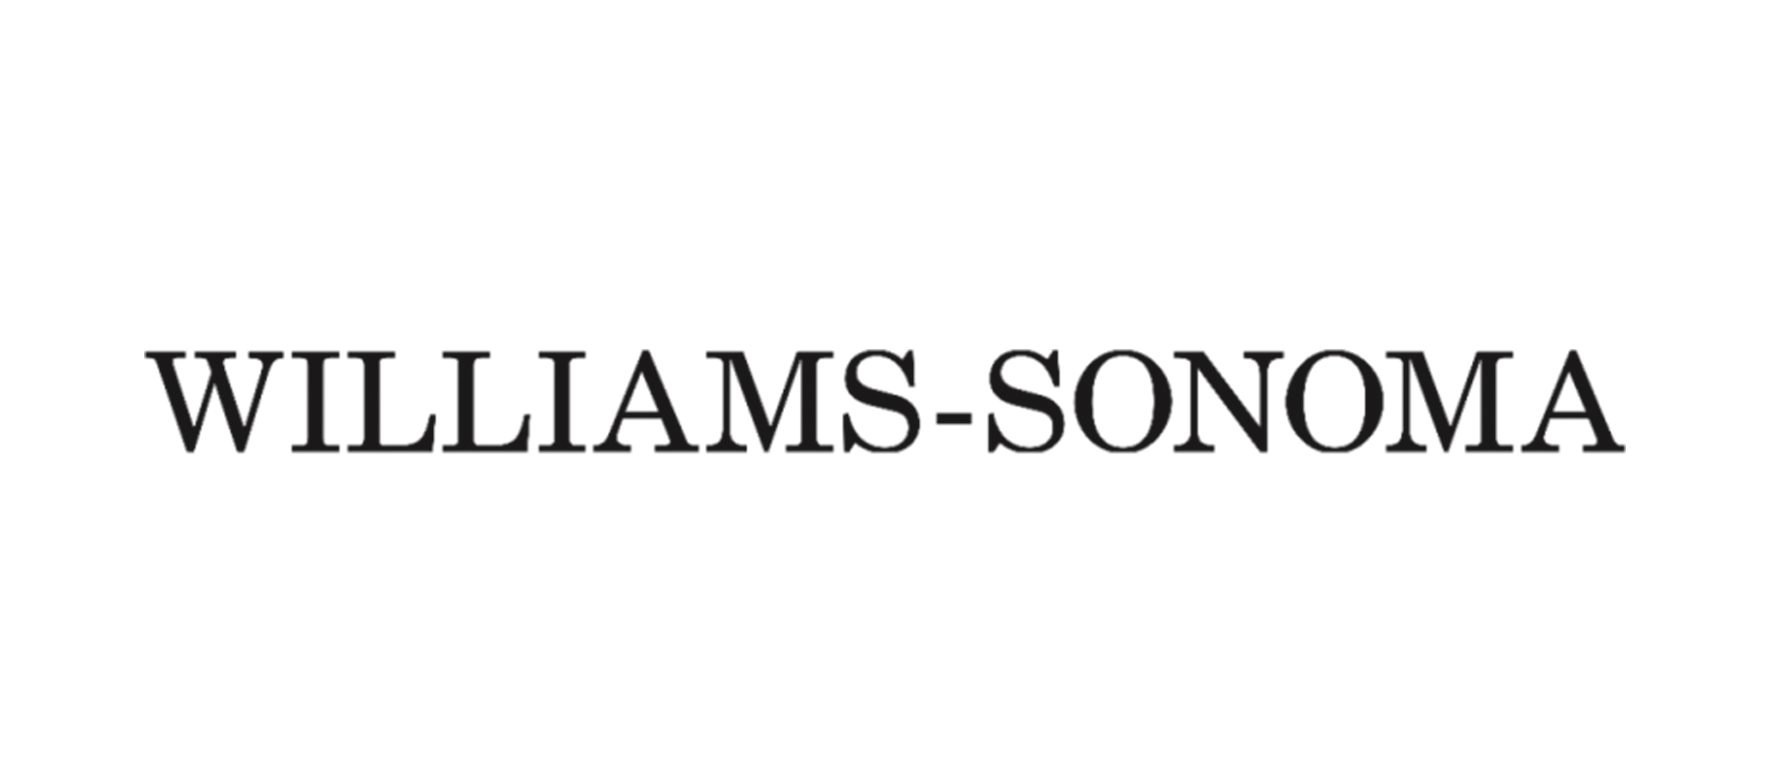 Williams_Sonoma_logo